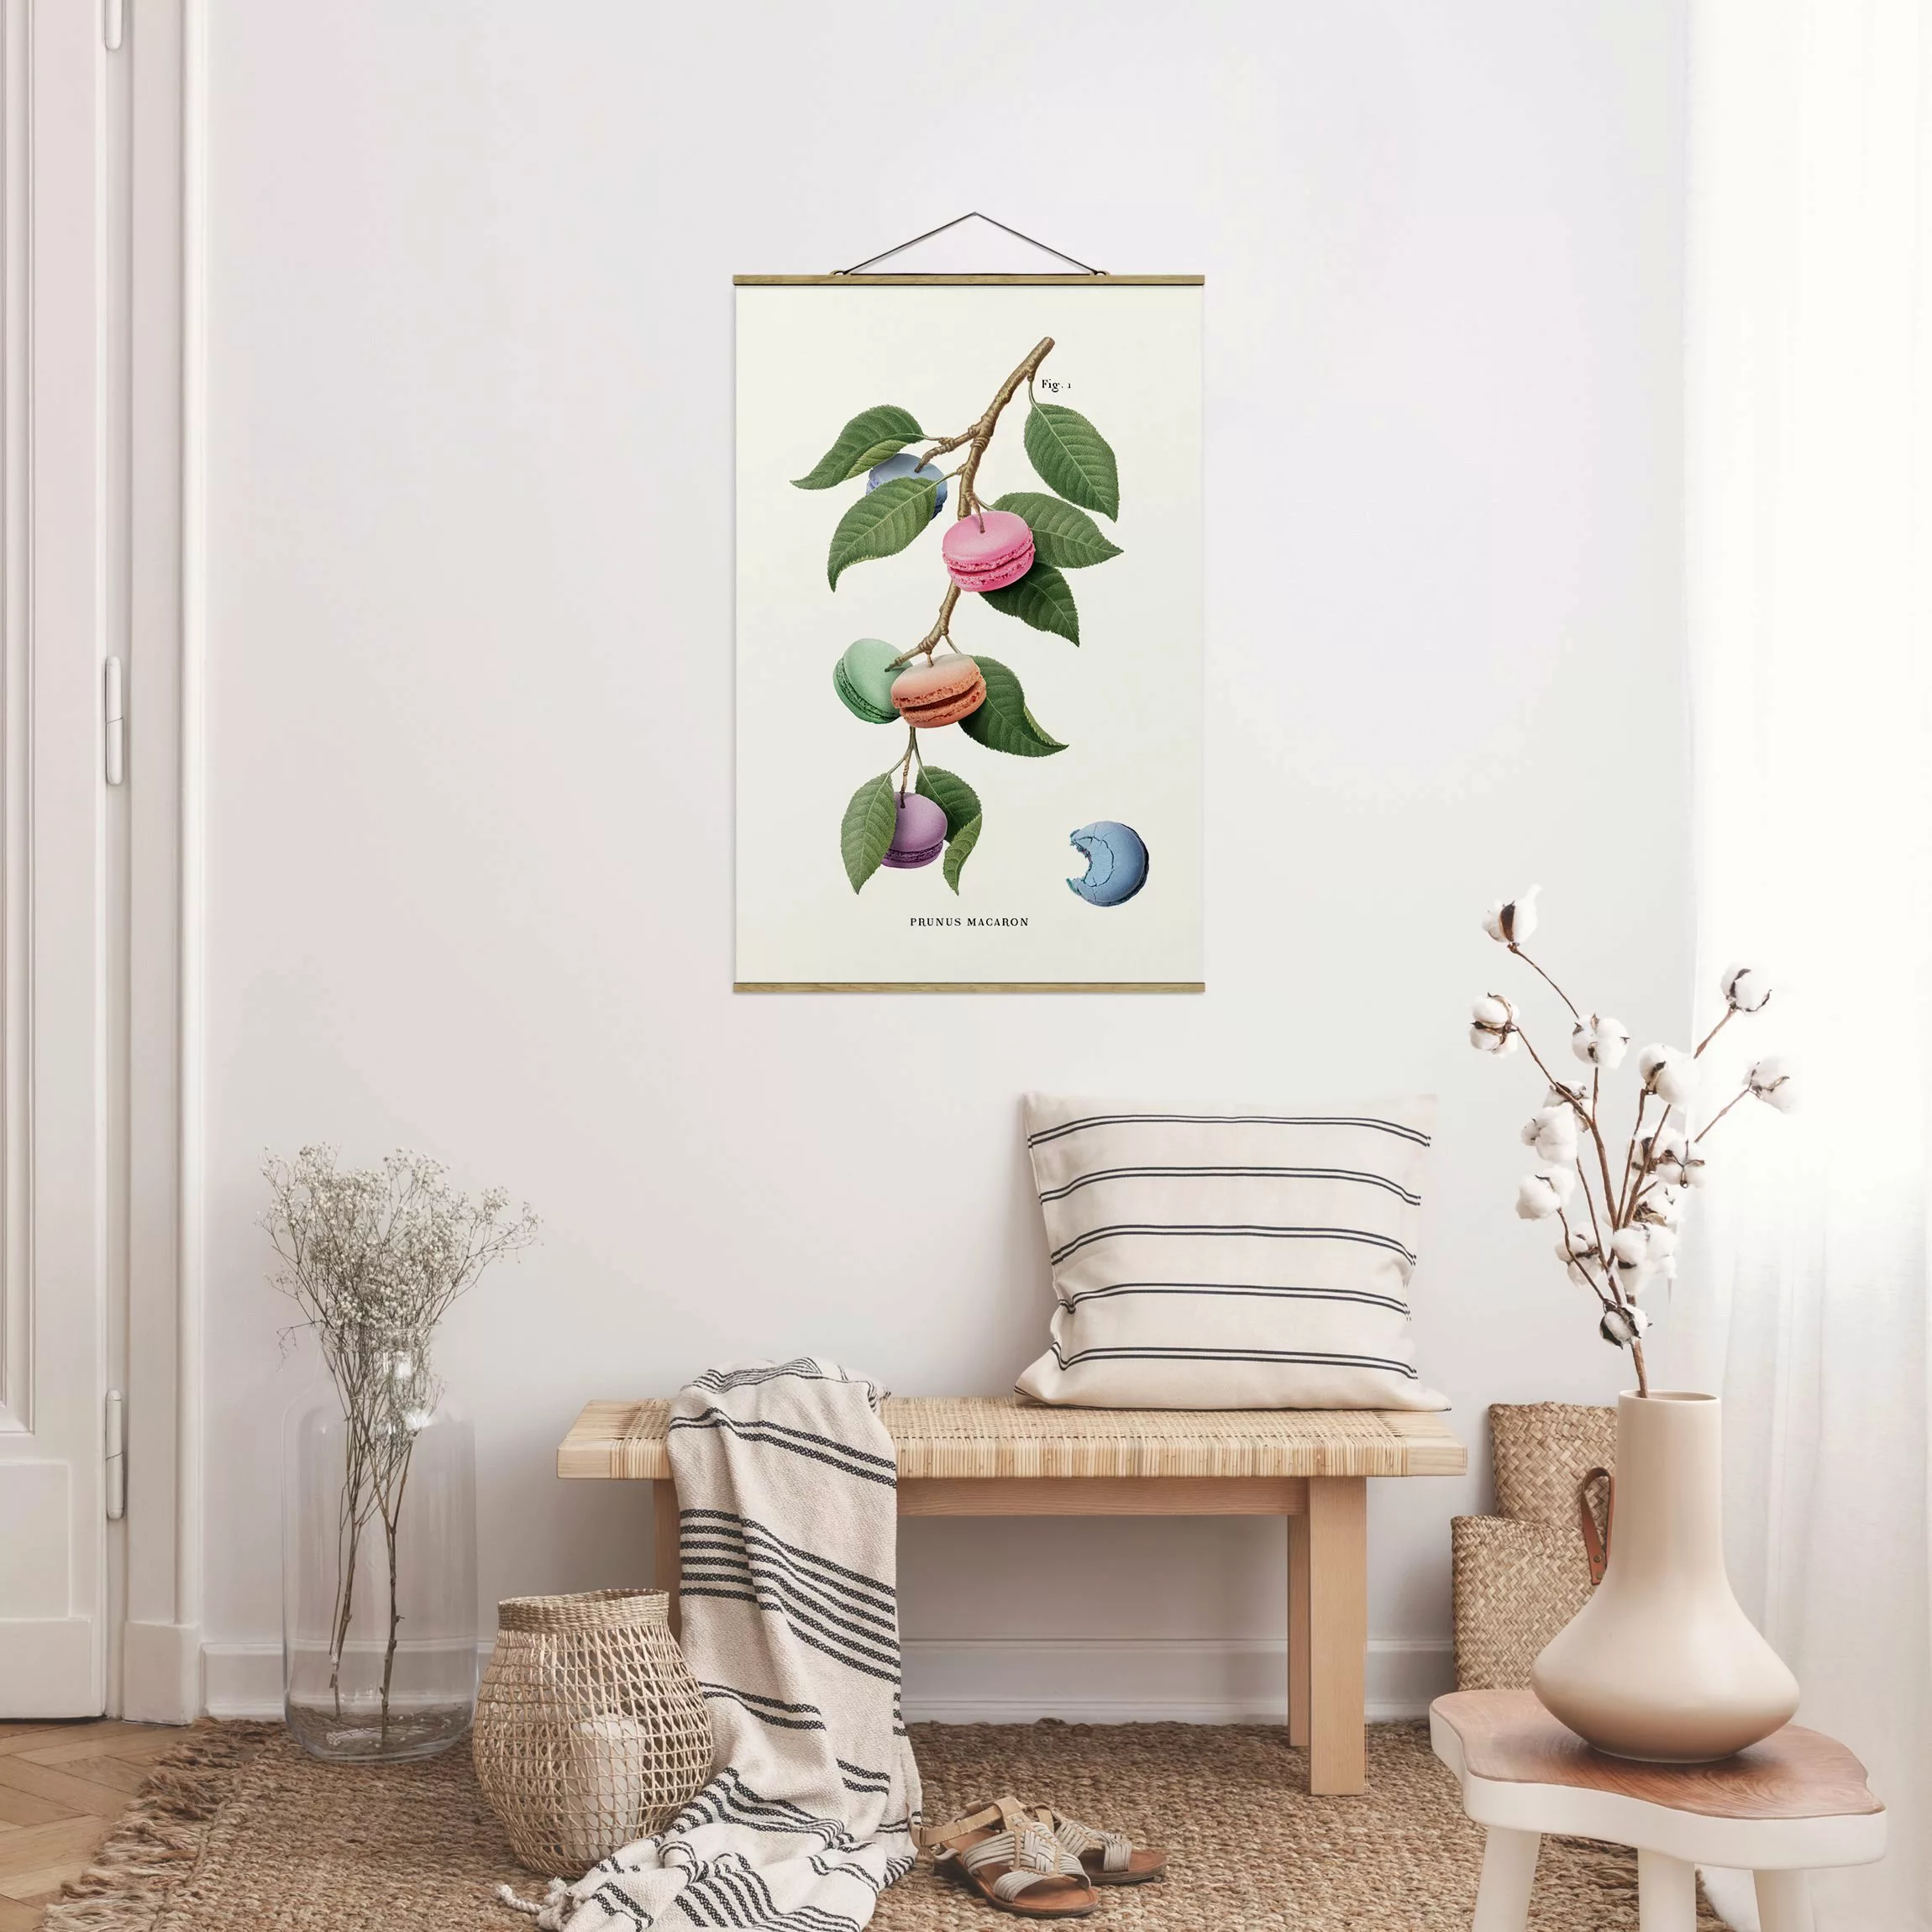 Stoffbild mit Posterleisten Vintage Pflanze - Macaron günstig online kaufen